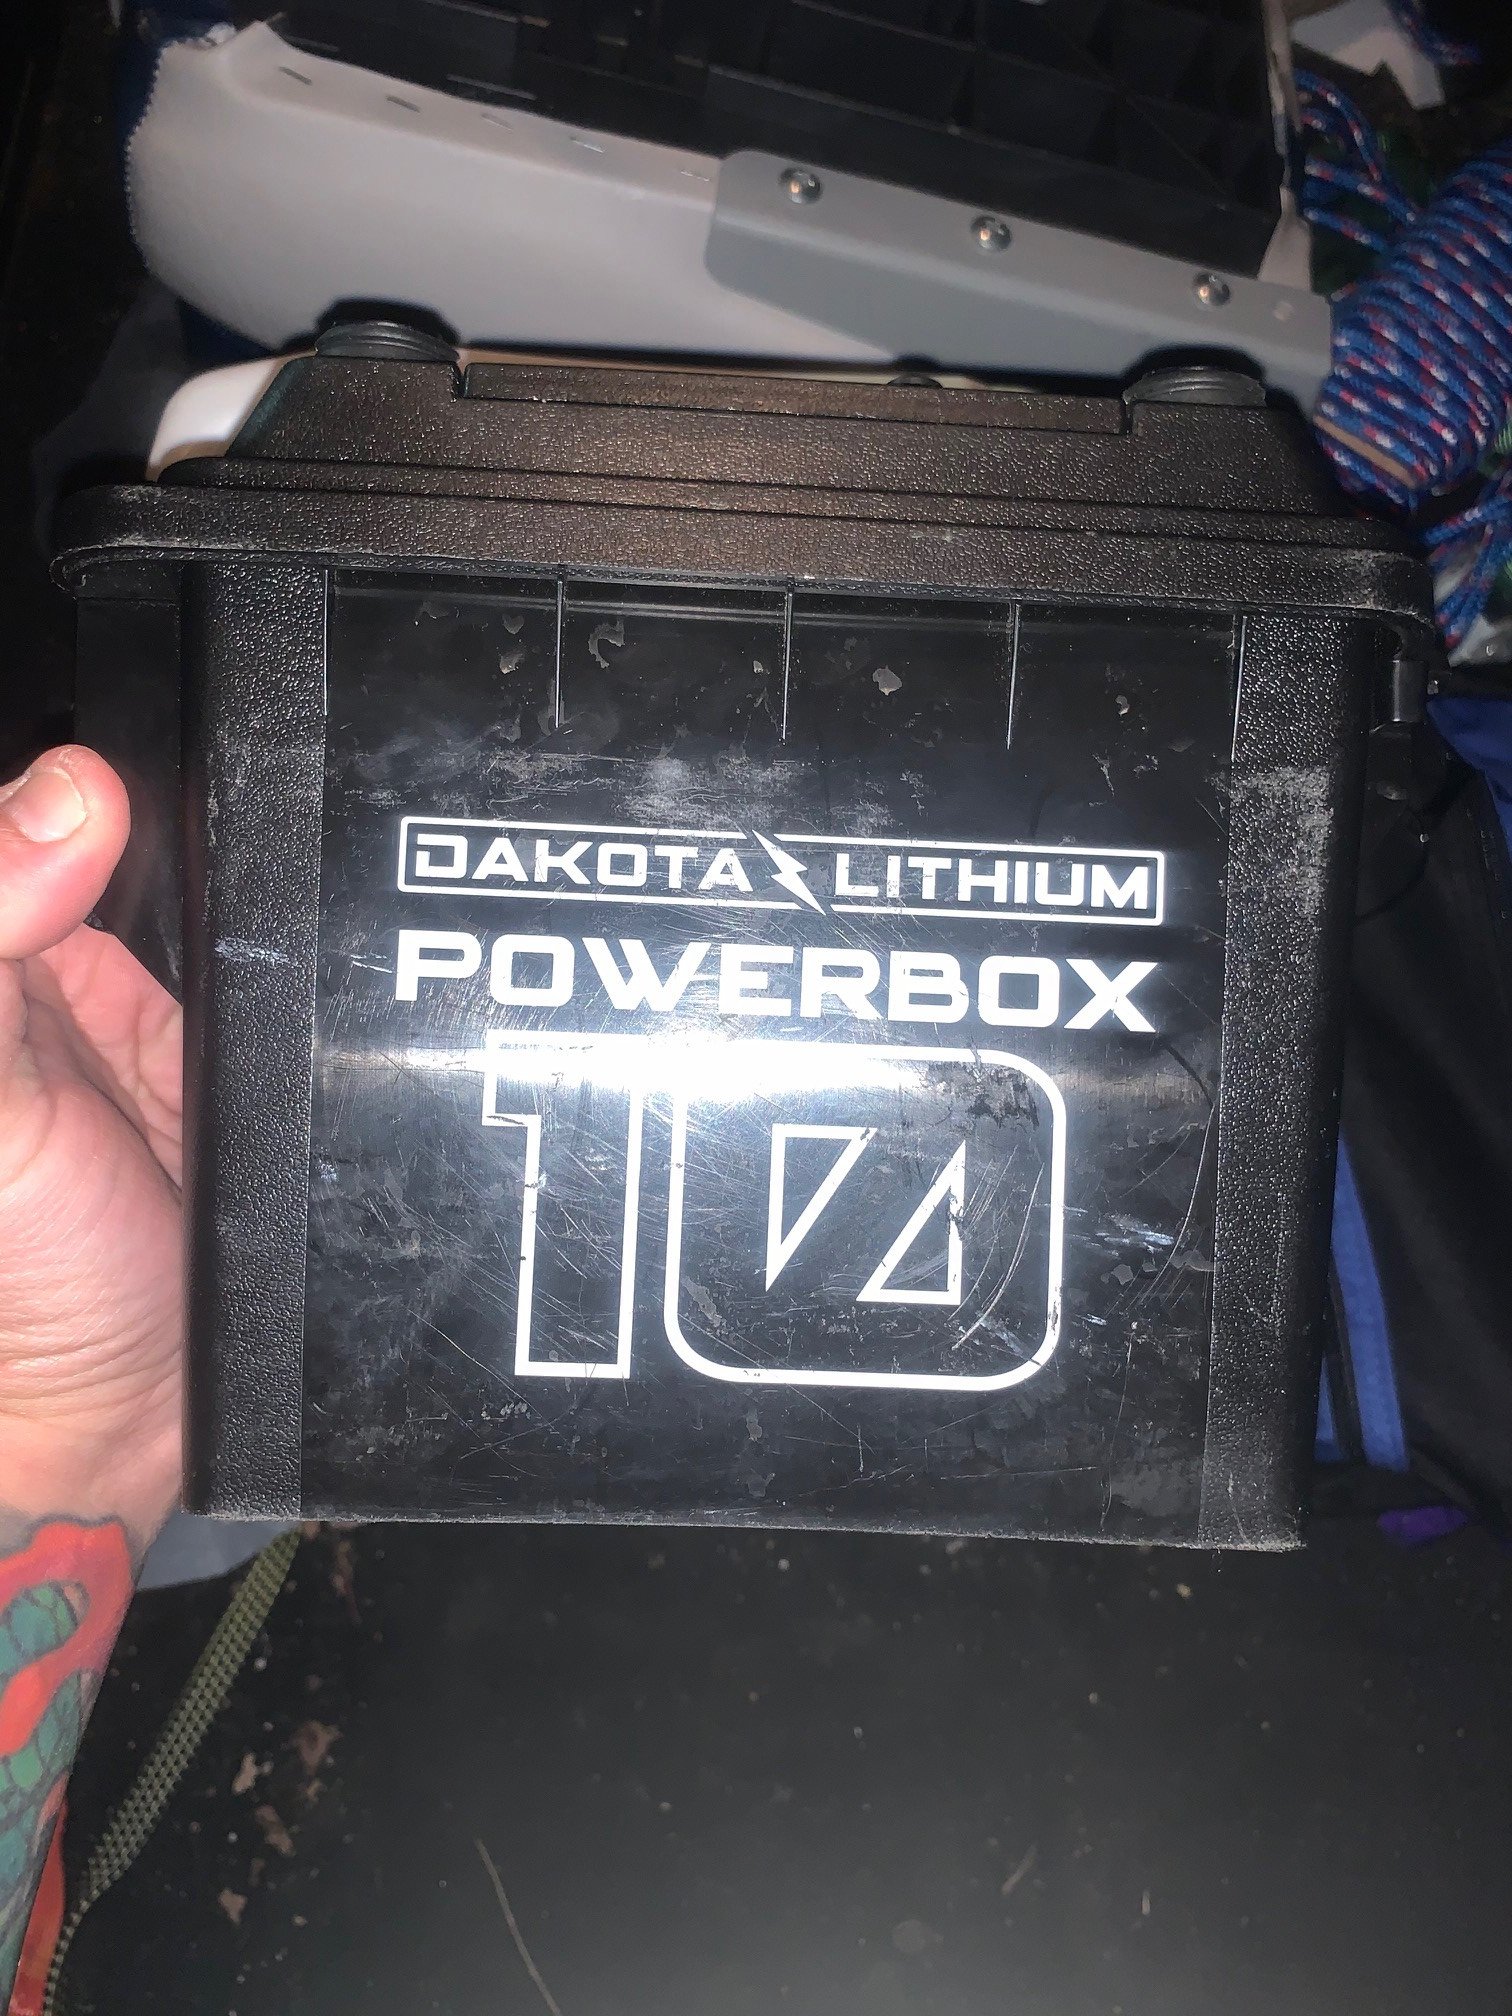 Dakota Lithium Power Box Review - The Underground - Swimbait Underground